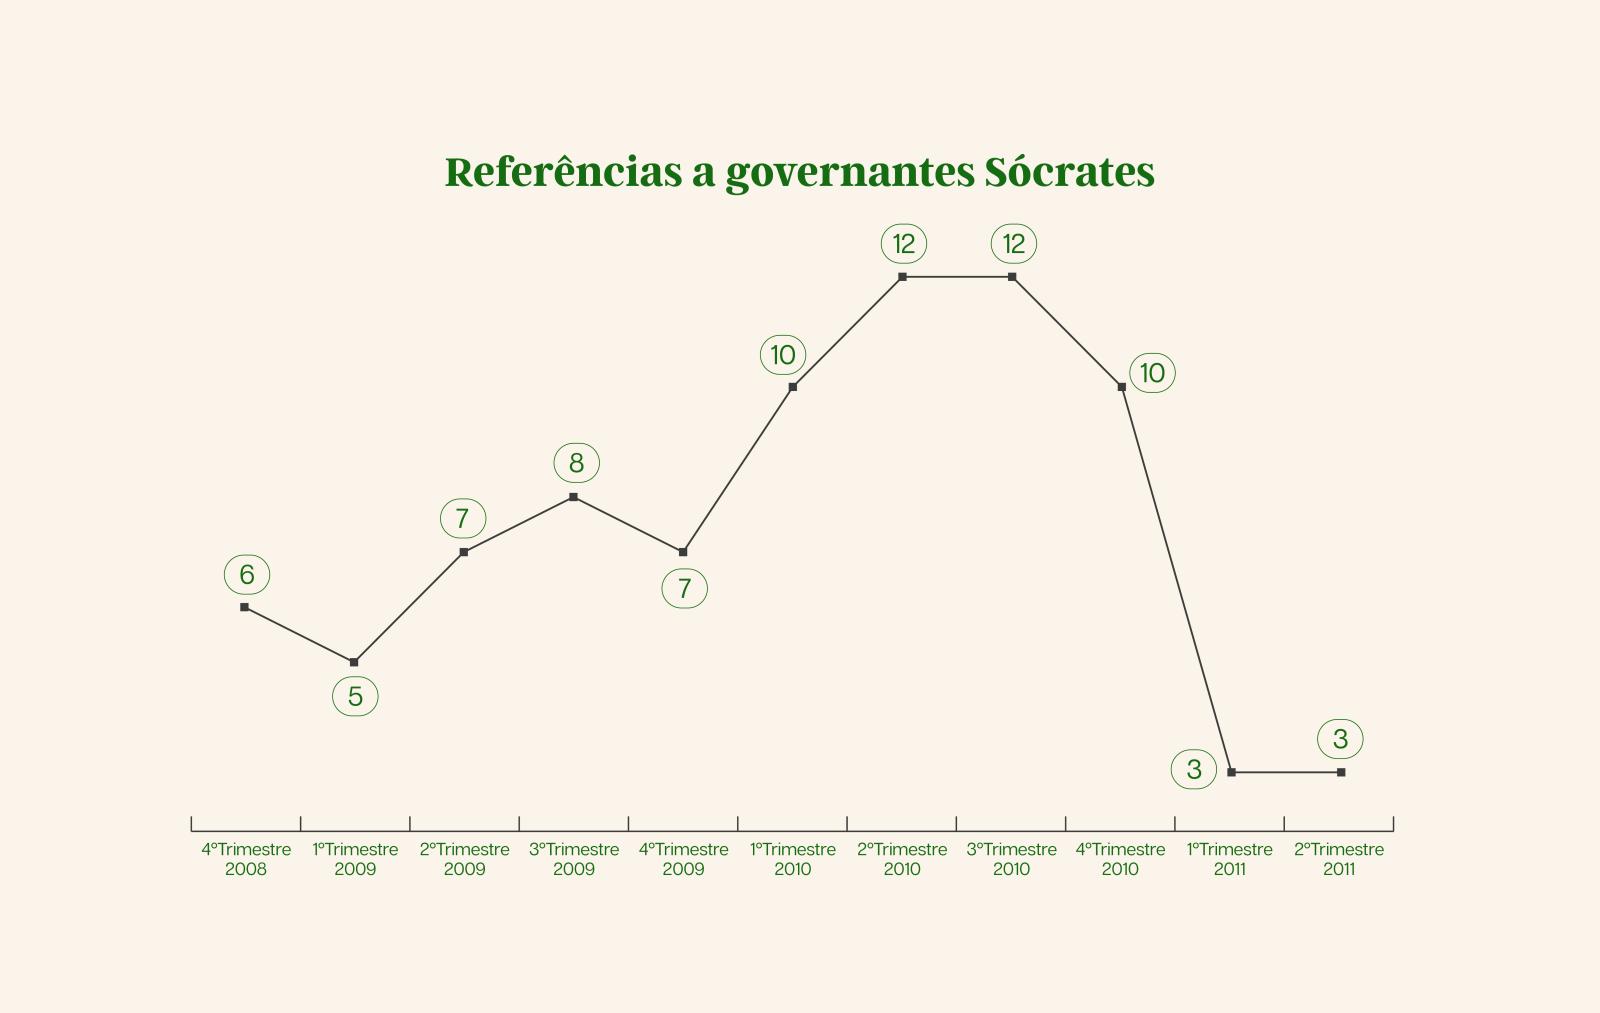 Referências a governantes dos executivos de José Sócrates por trimestre, entre 2008 e 2011